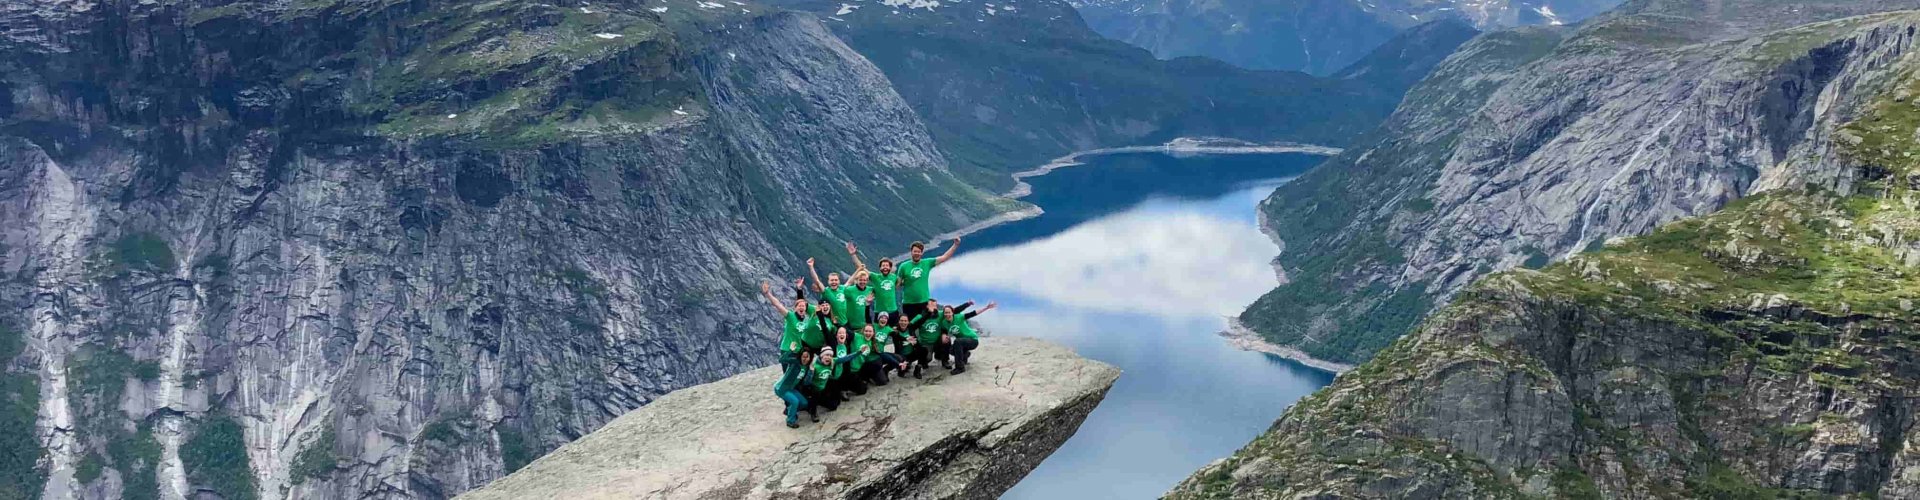 Trolltunga Hike Noorwegen Groepsfoto Kaaiman Groepsreis